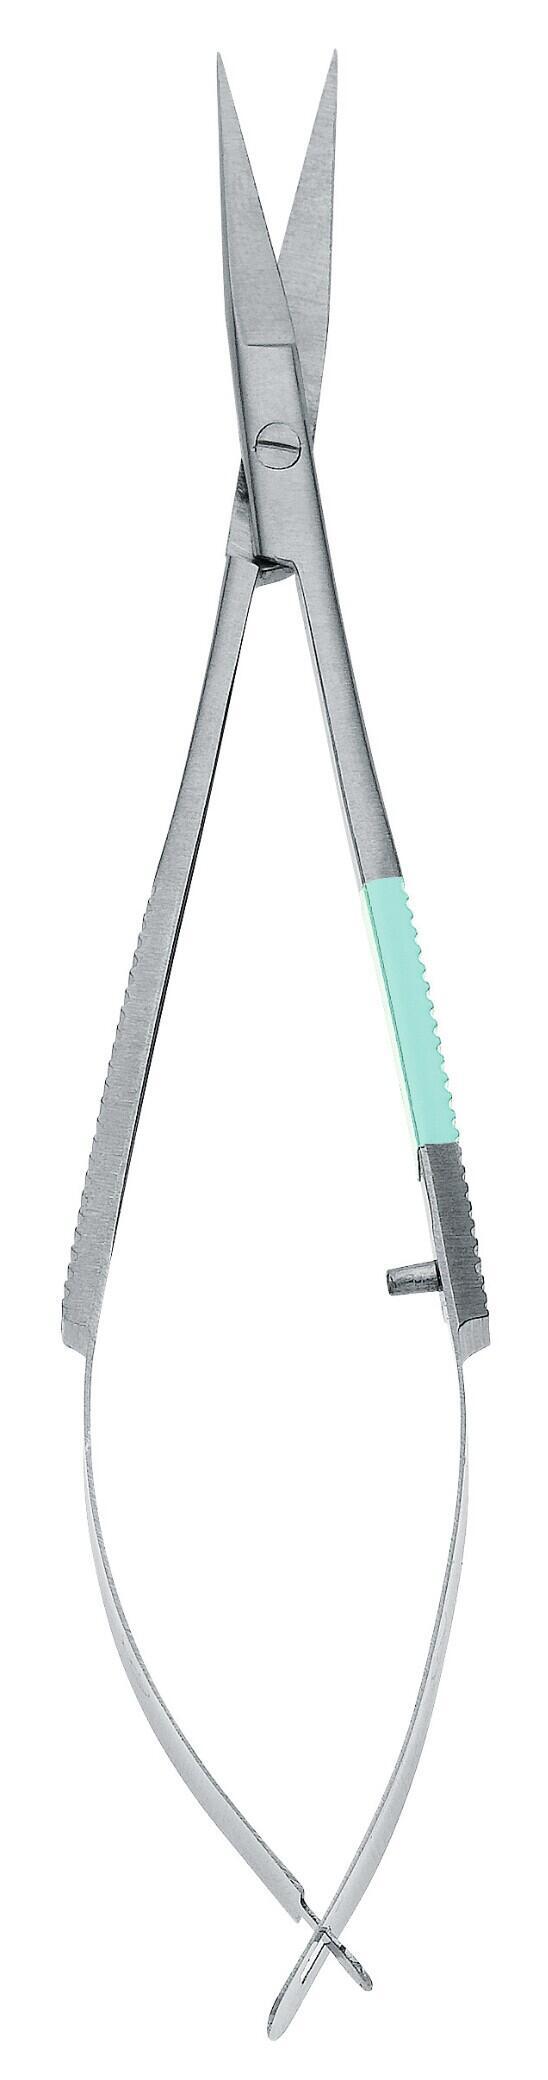 Nástroj Peha® nůžky s mikro pružinou - sterilní, jednotlivě balené - 11 cm - 15 kusů